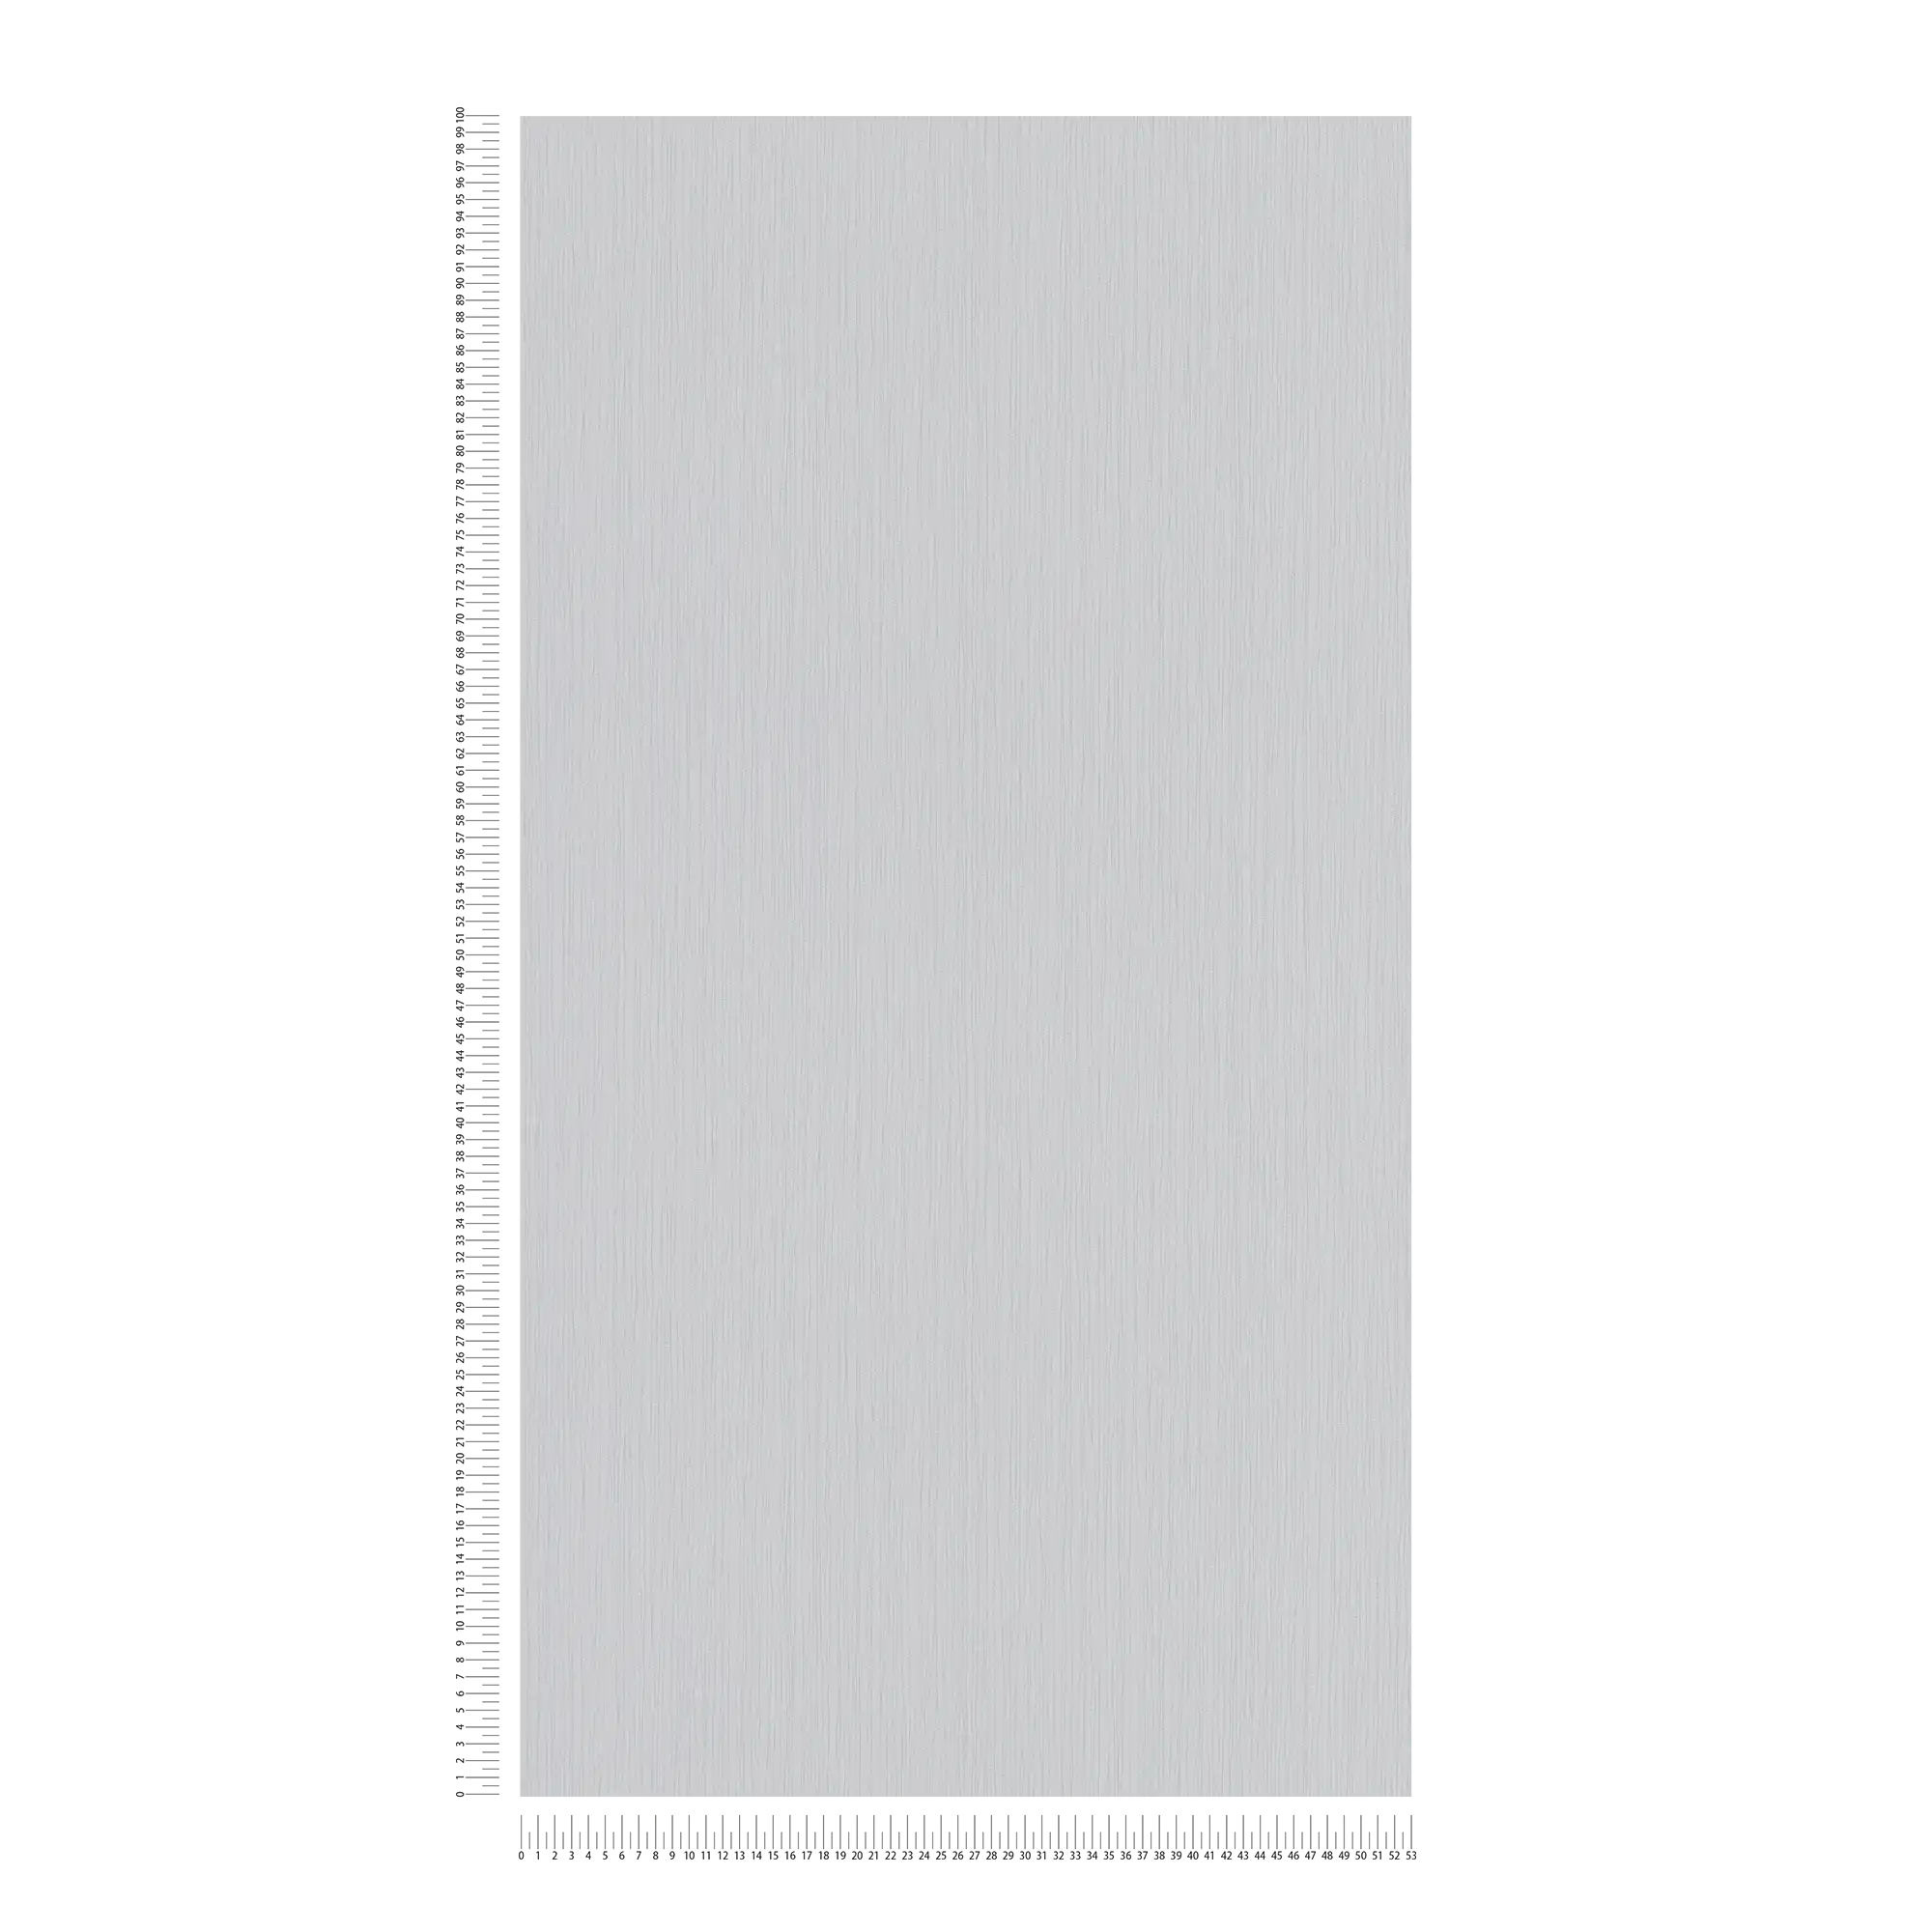             Carta da parati in tessuto non tessuto grigio cemento con tratteggio a linee - grigio
        